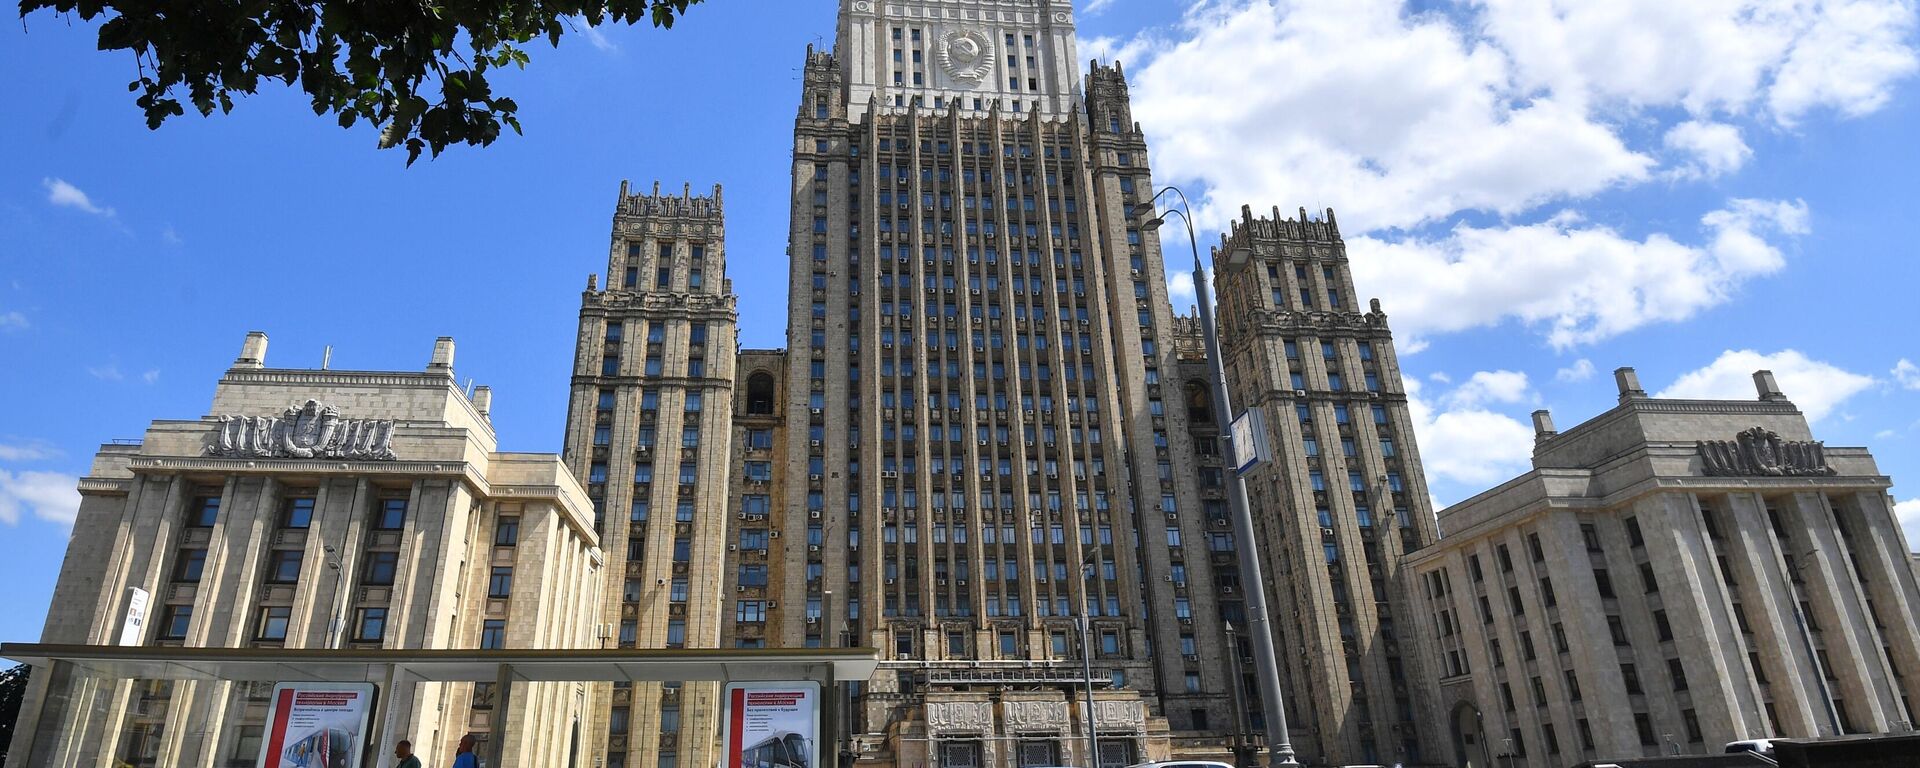 Русија: Позив Вашингтону да појача амбасаду у Москви и омогући издавање виза руским држављанима - Sputnik Србија, 1920, 02.11.2021